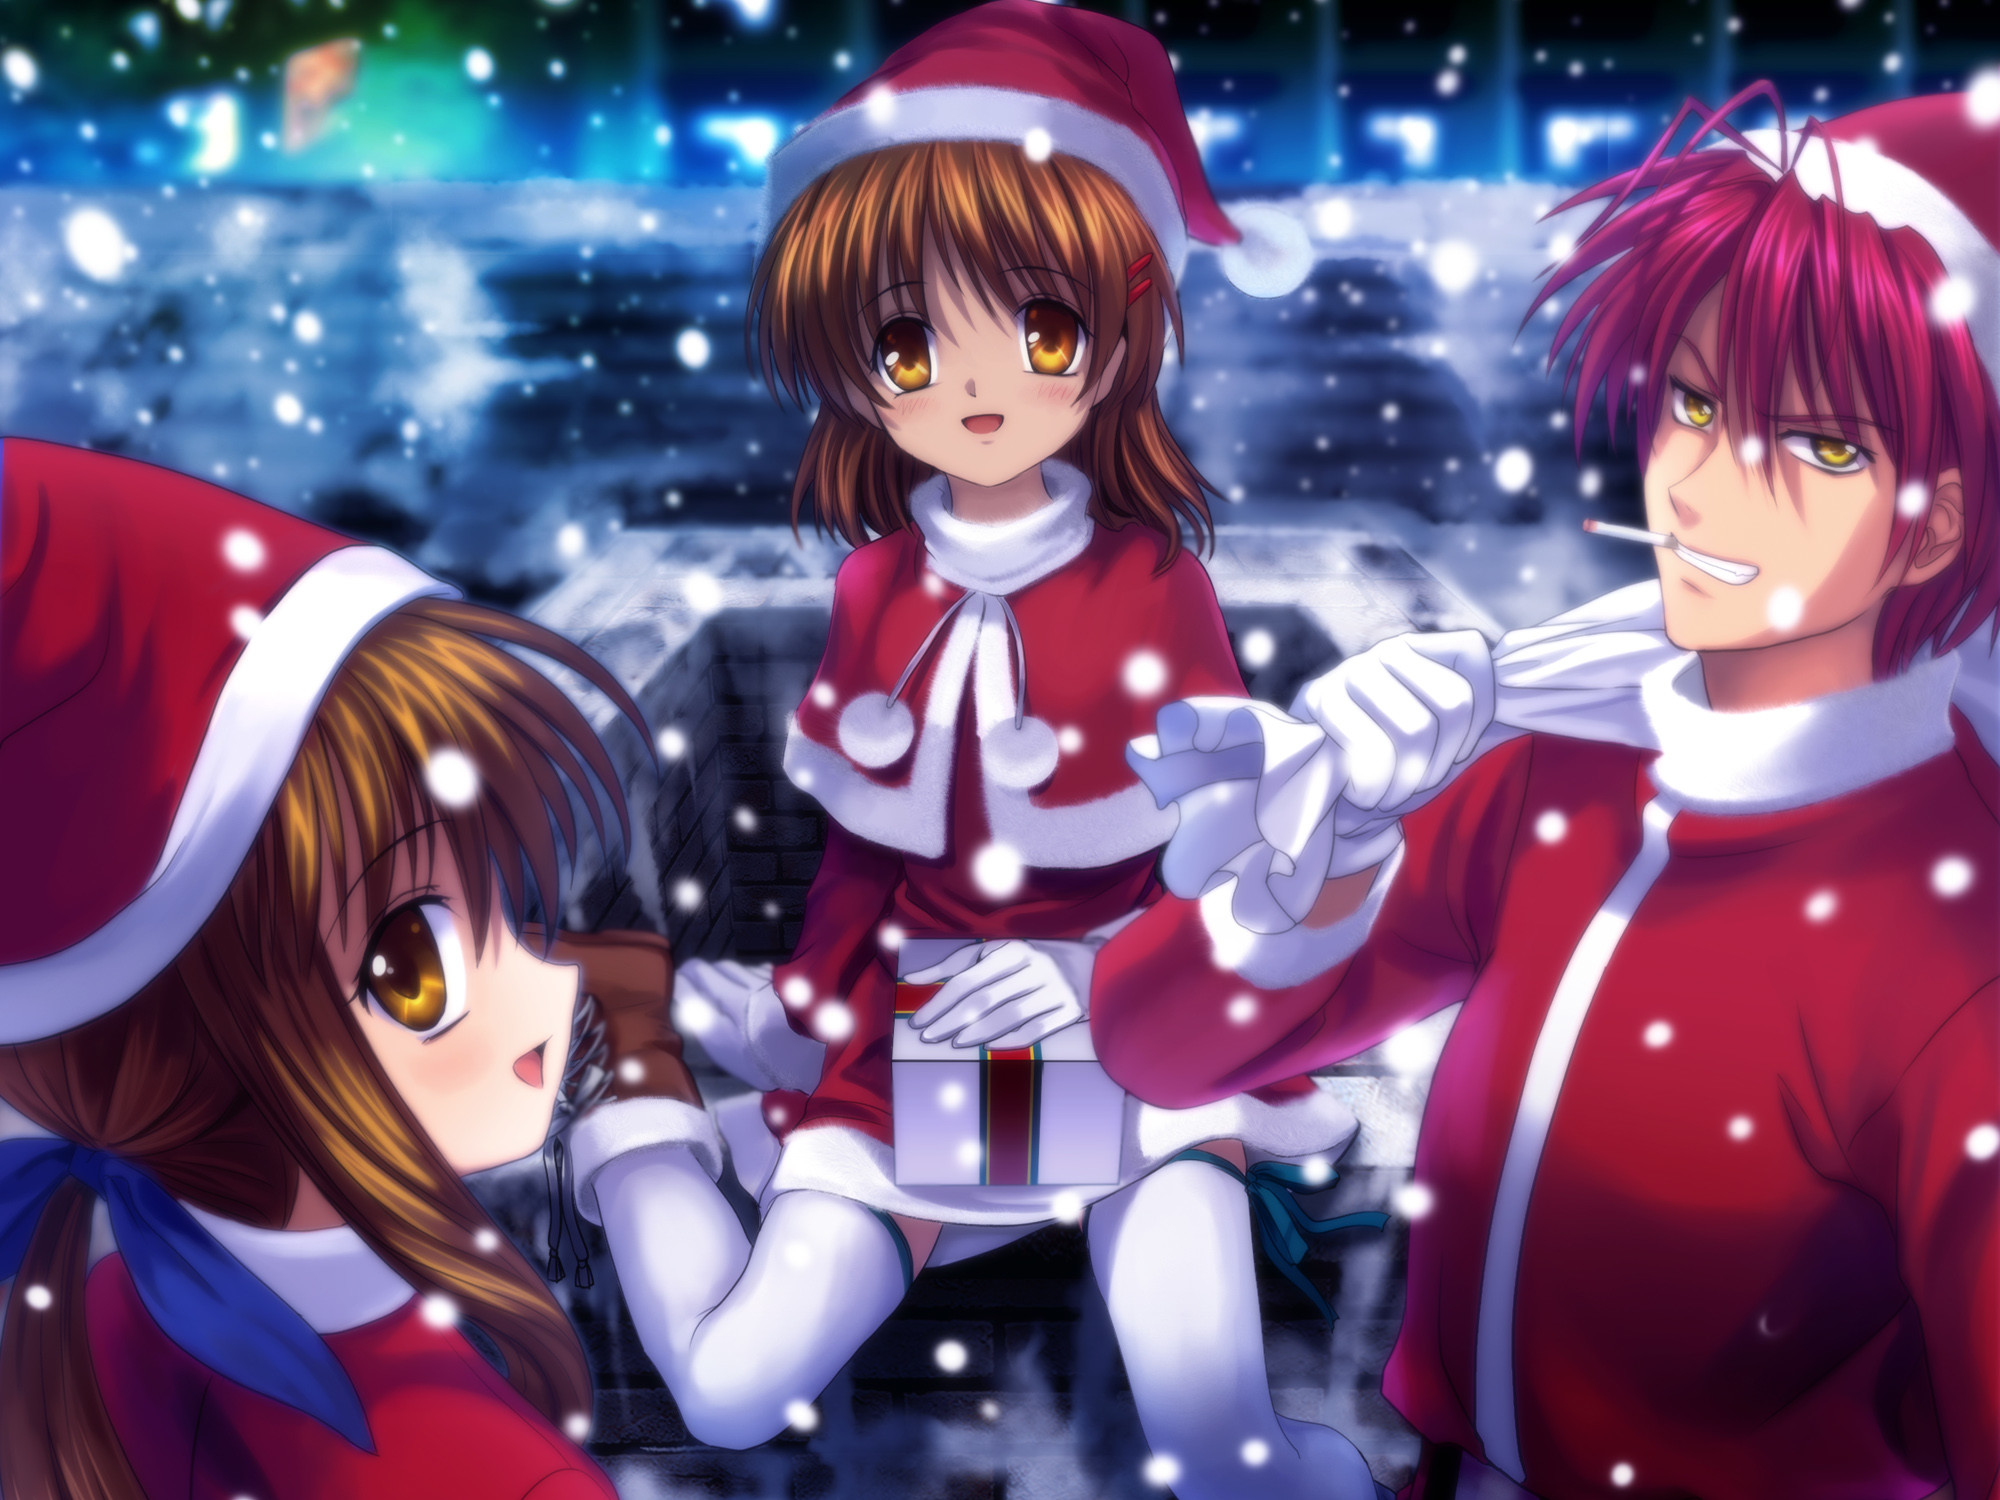 Anime Christmas Background Cartoon Christmas Wallpapers 21971wall.jpg